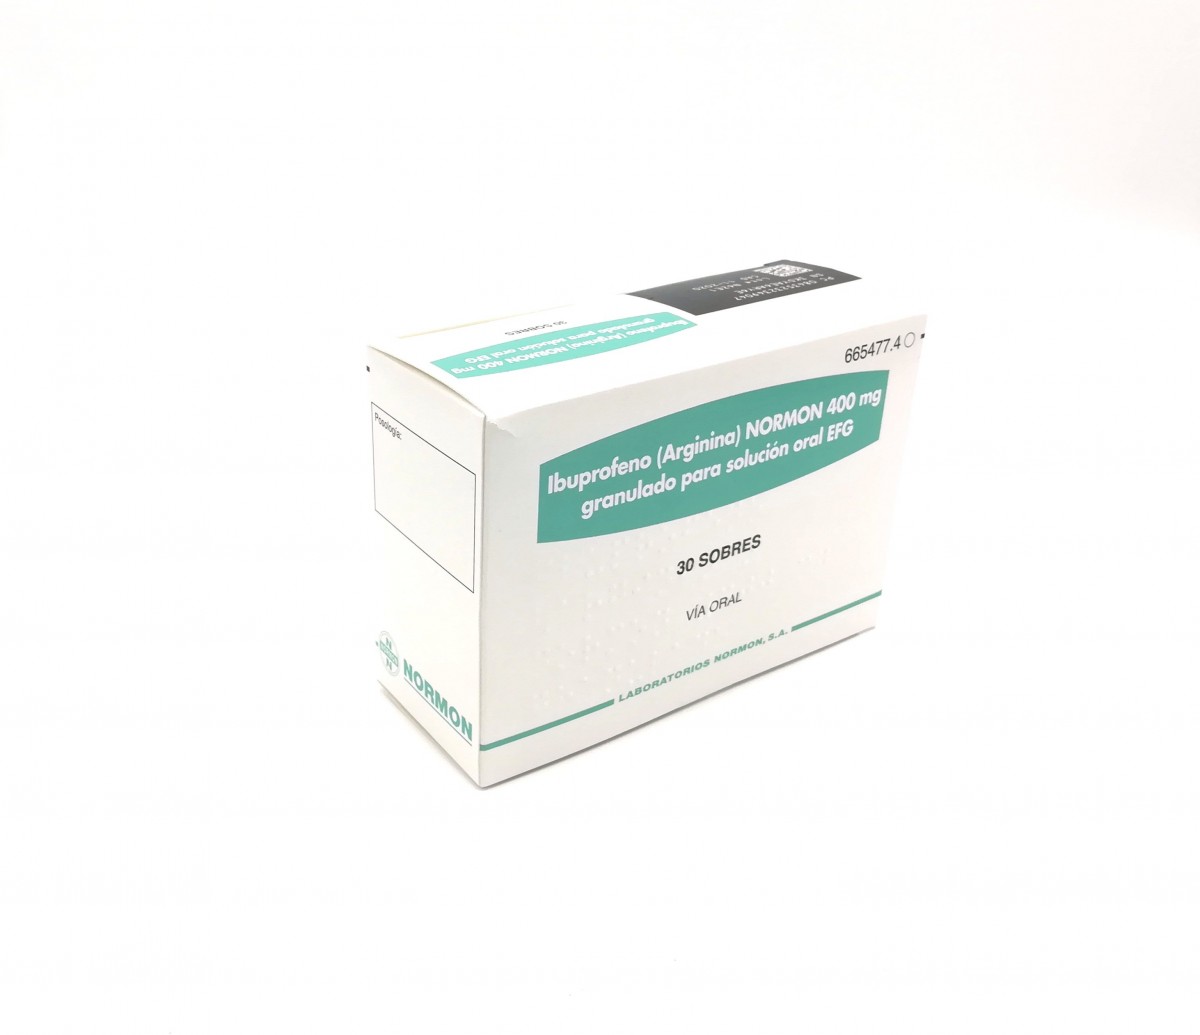 IBUPROFENO (ARGININA) NORMON 400 mg GRANULADO PARA SOLUCION ORAL EFG , 500 sobres fotografía del envase.